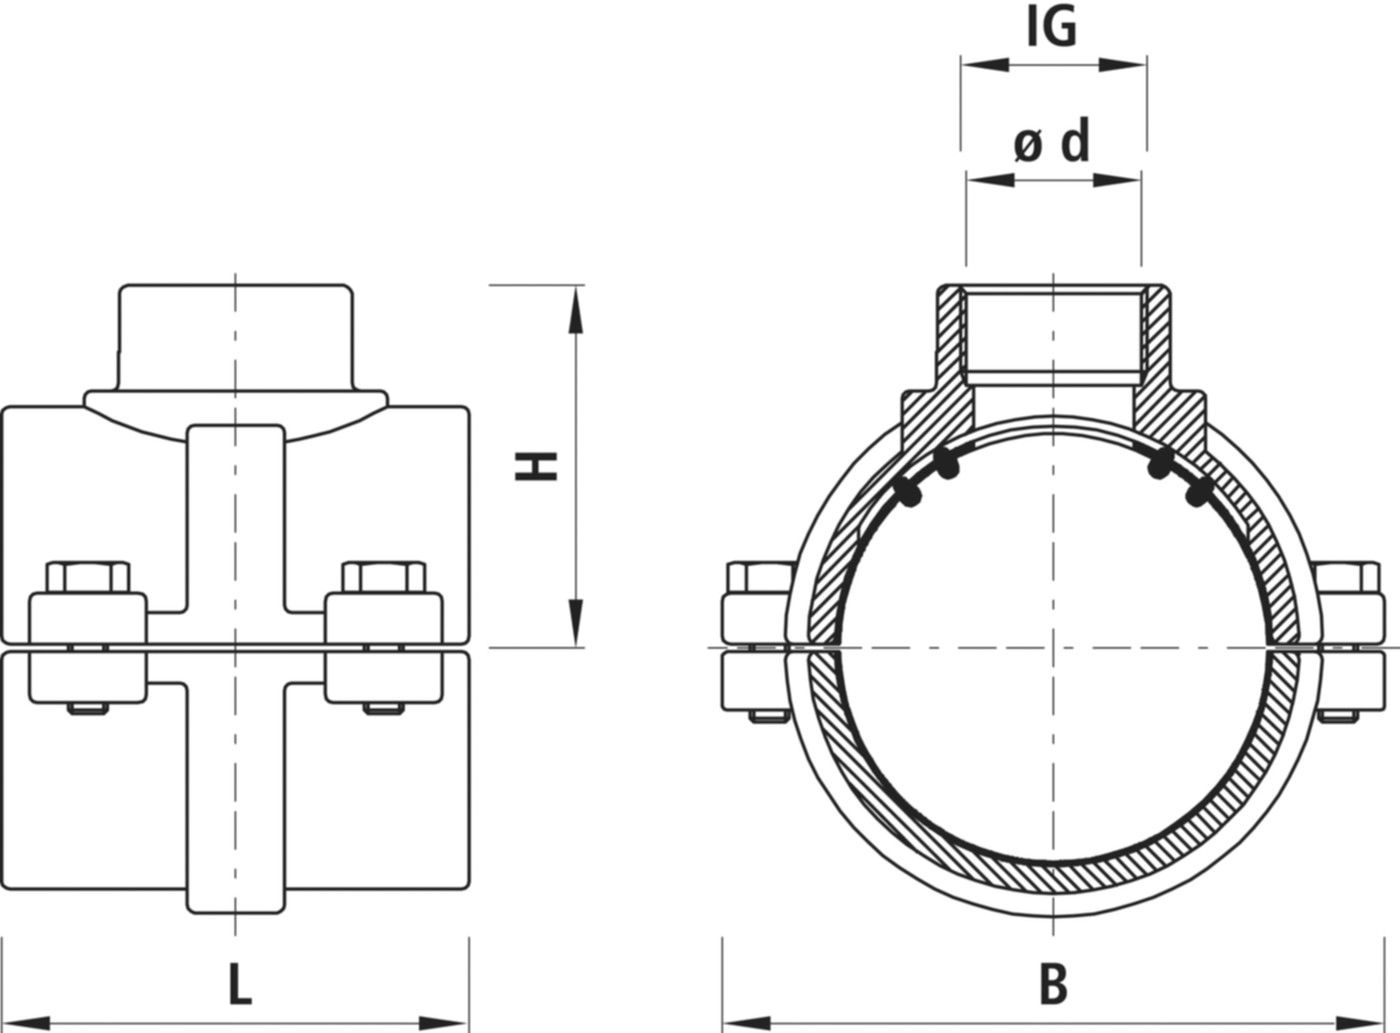 Haku-Anbohrschelle mit IG für Gas 5255 d 160mm - 1 1/2" - Hawle Hausanschluss- und Anbohrarmaturen